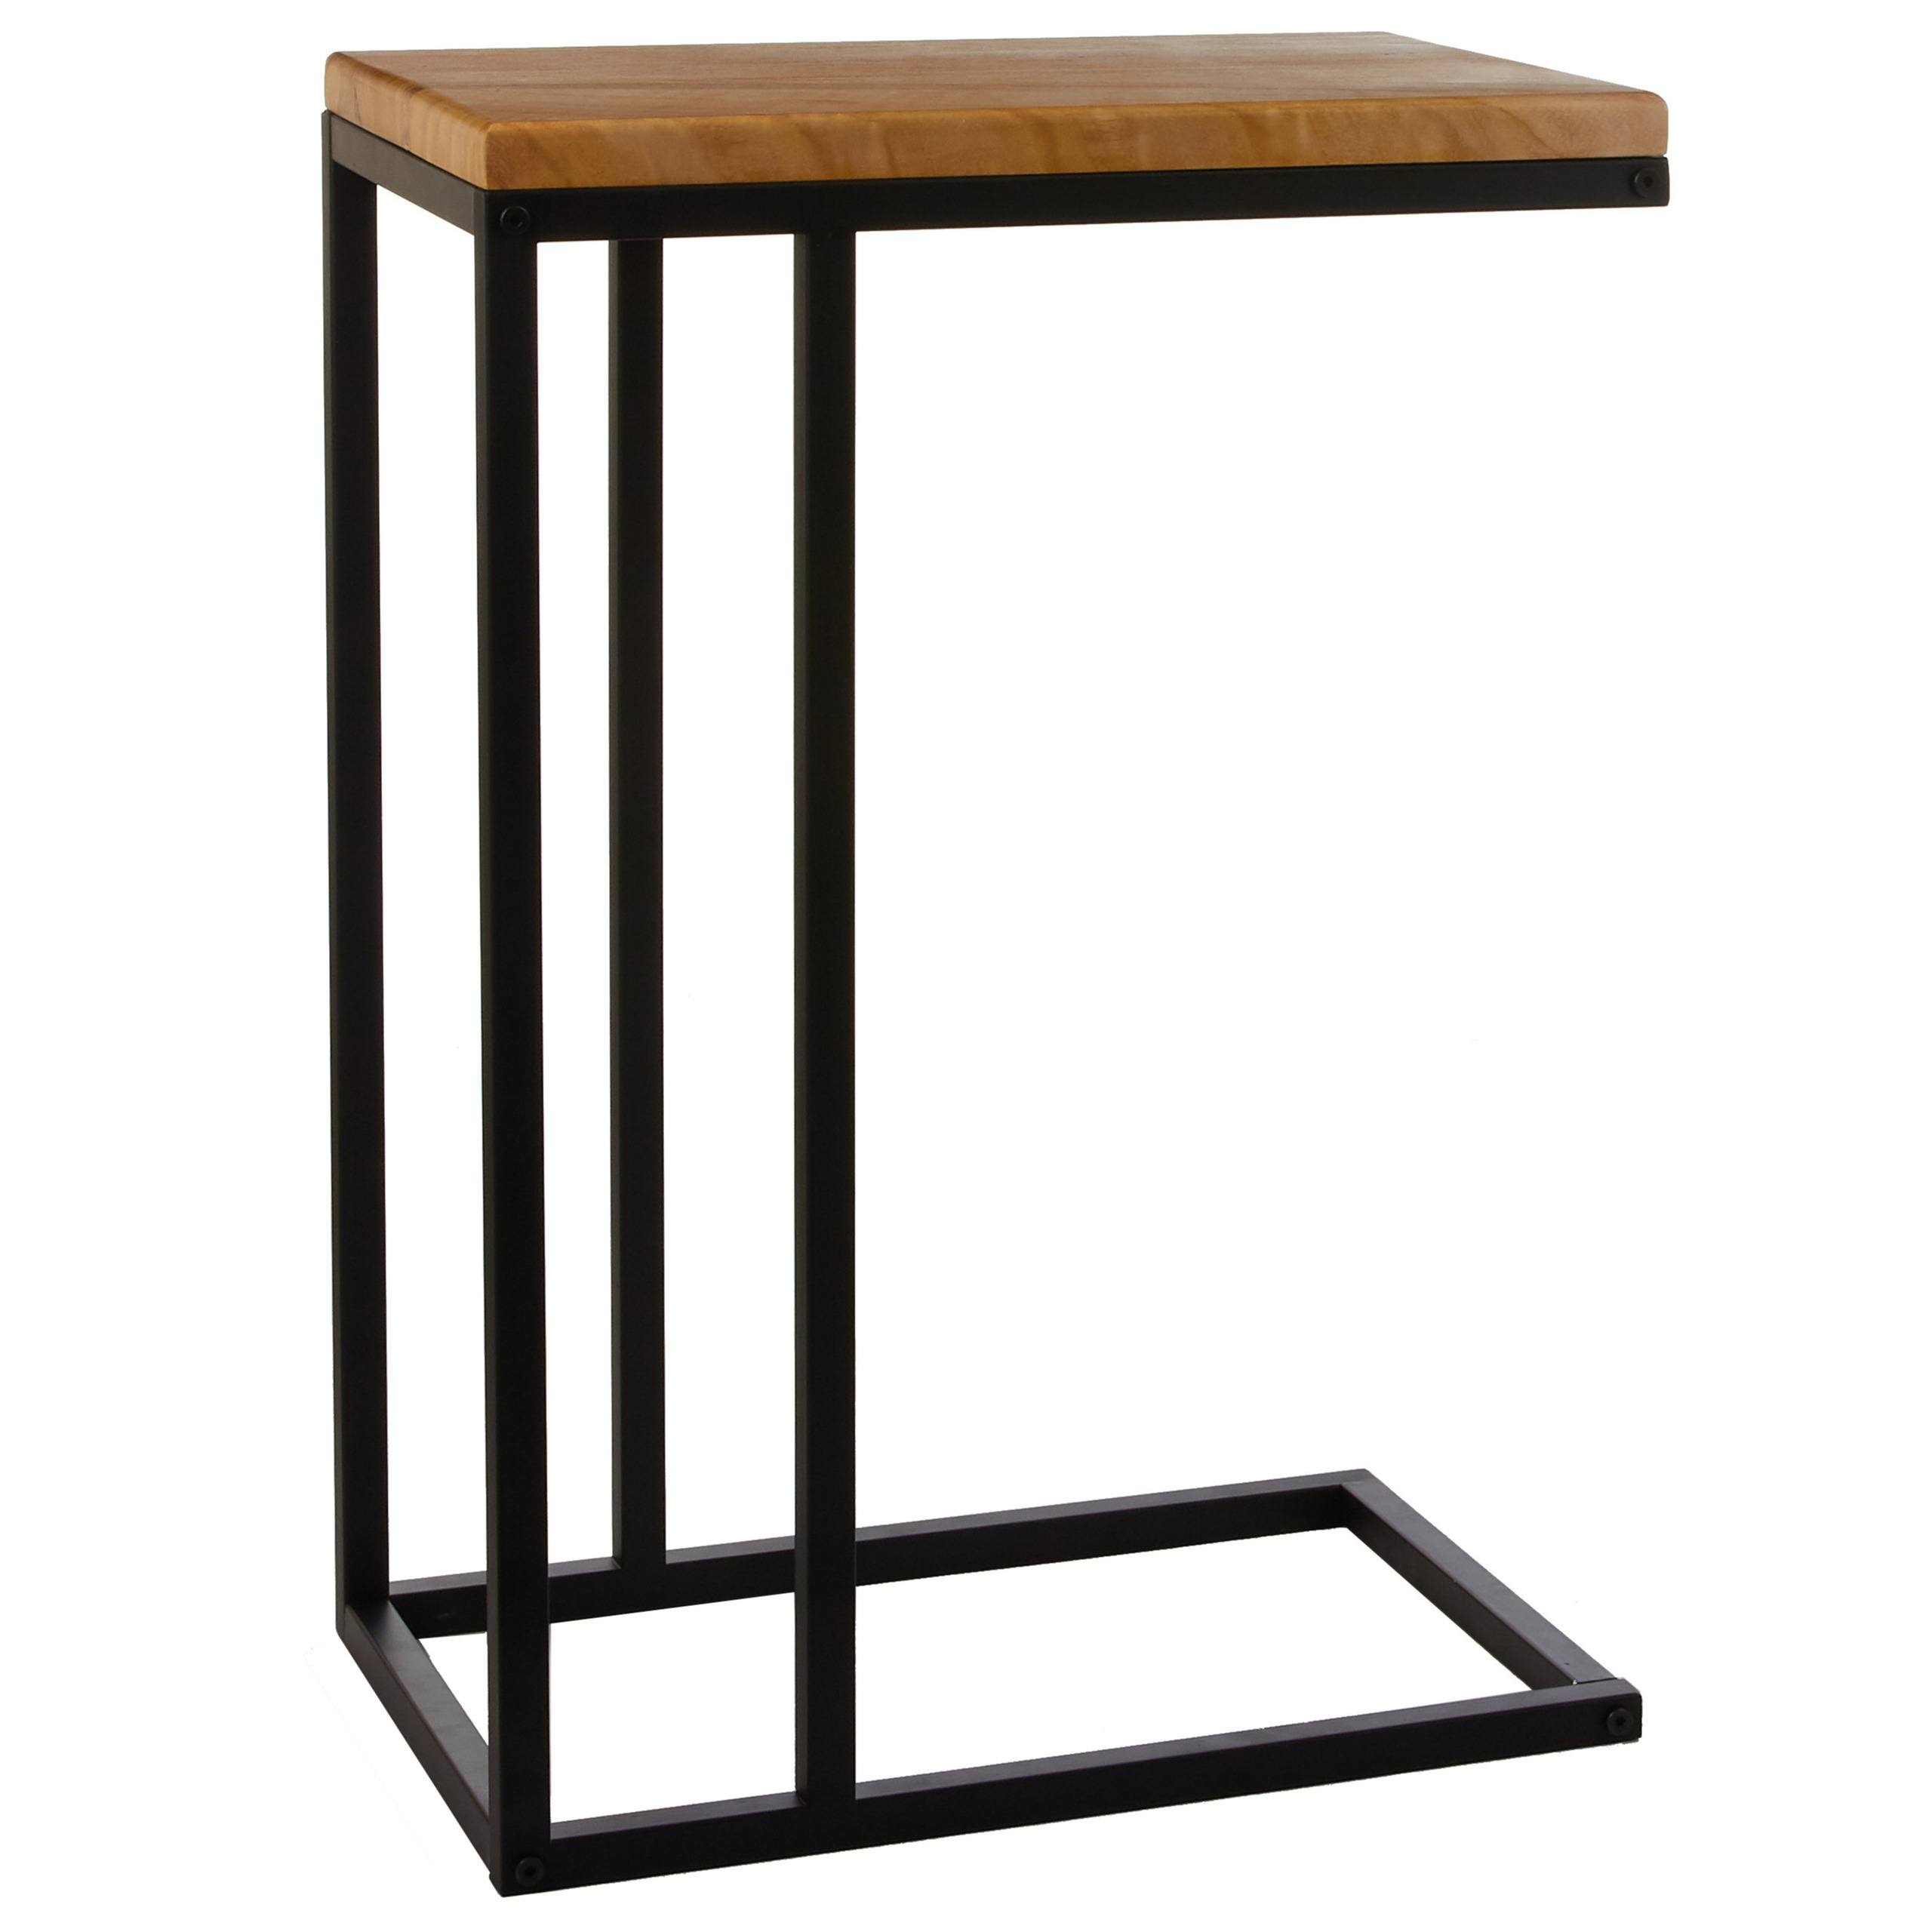 Bijzettafel-banktafel Oskar vierkant hout-metaal zwart 46 x 30 x 66 cm